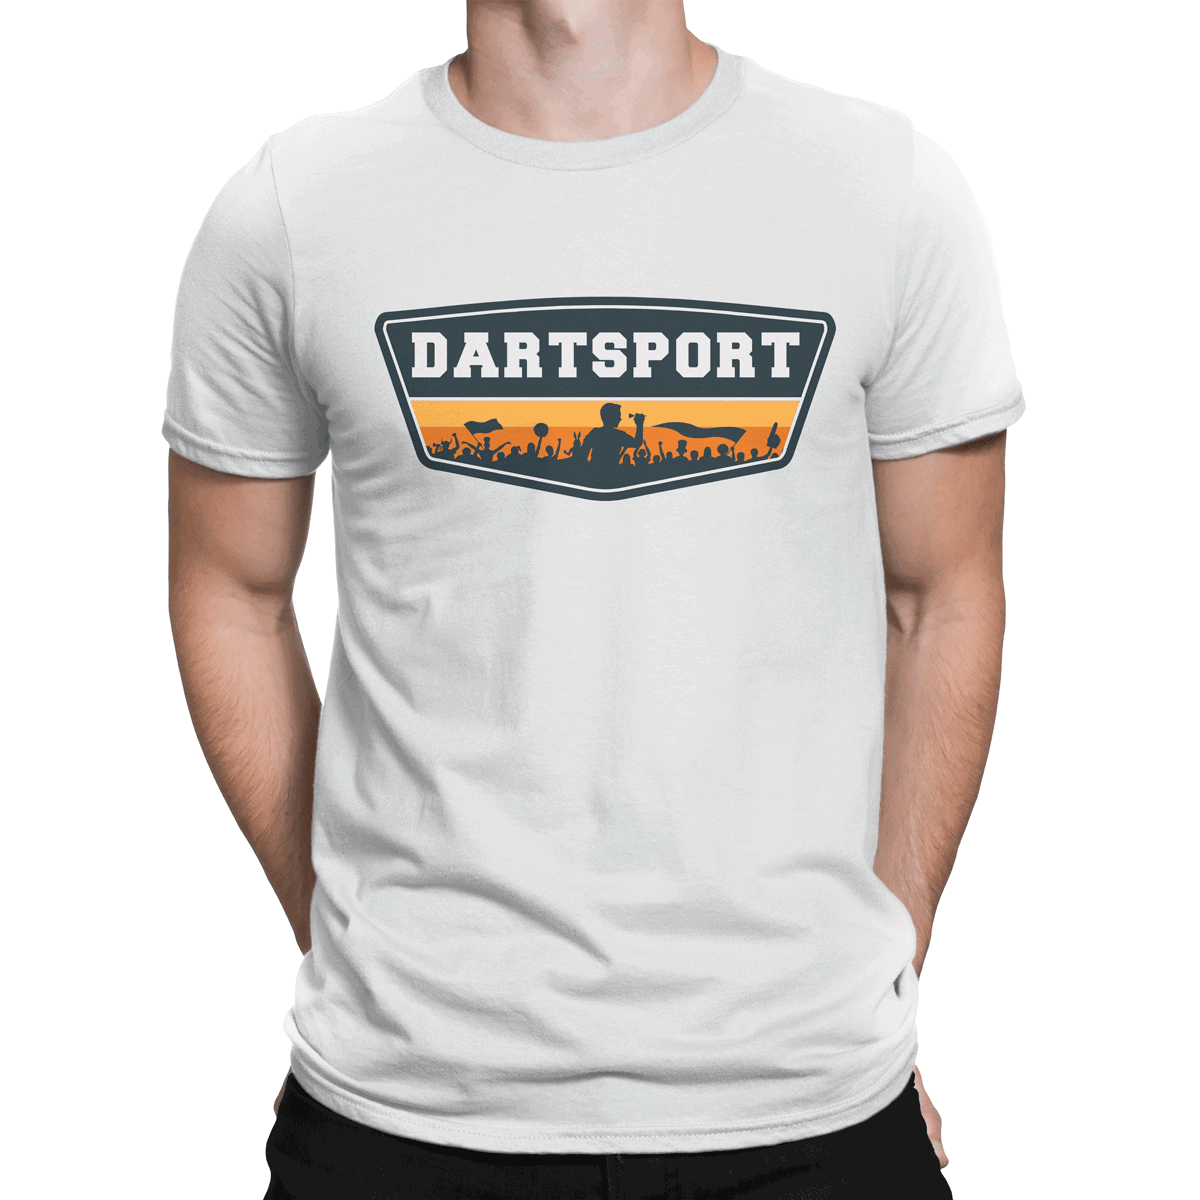 Dartshirt Dart T-Shirt Biersport Dartclub Dartsport Bekleidung Darthemd Pfeil 43 